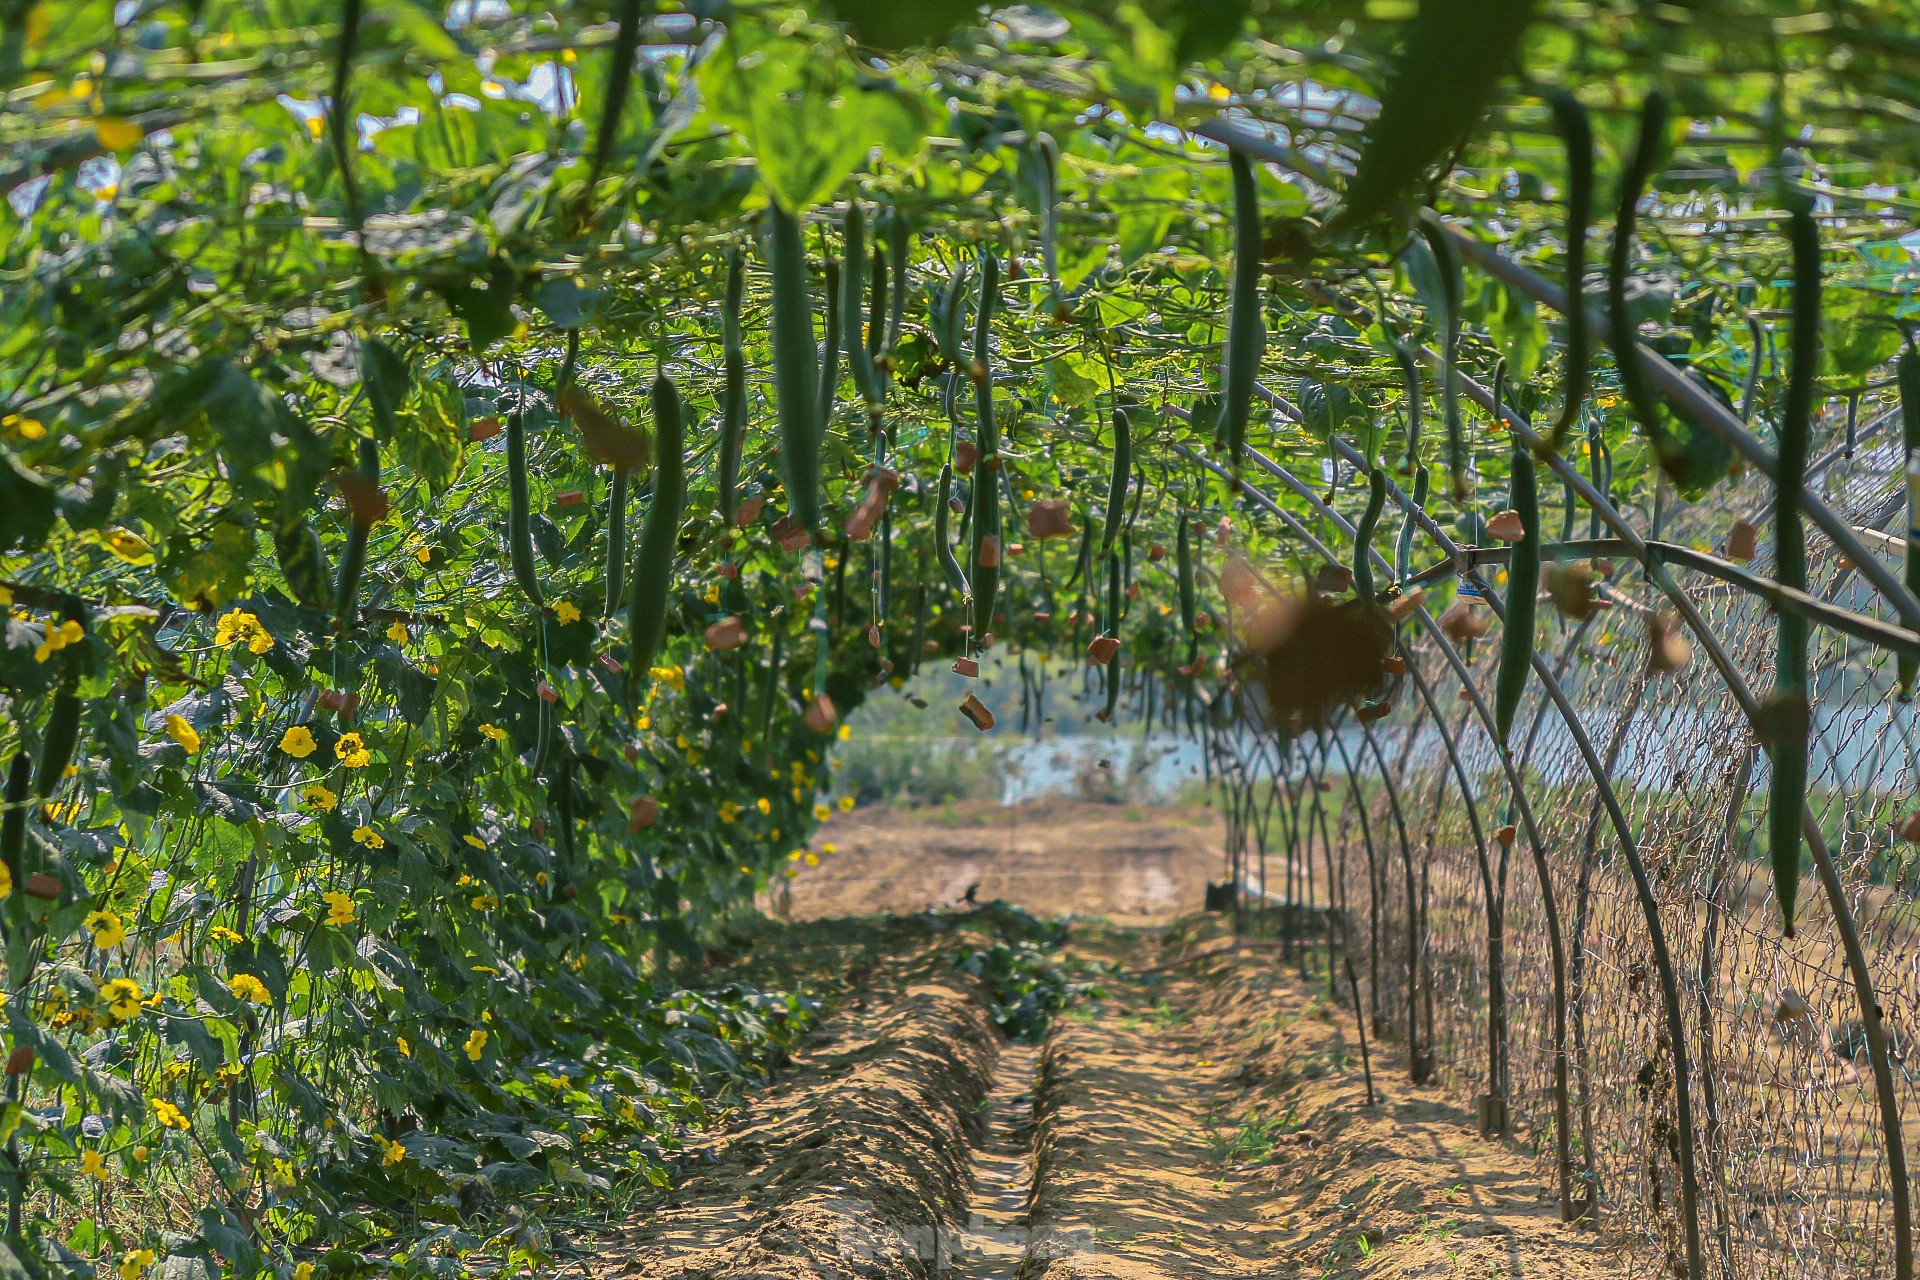 Nông dân ở làng rau này ở Đà Nẵng dùng "độc chiêu" giúp những vườn mướp của mình cho trái to, dài, thẳng tắp- Ảnh 7.